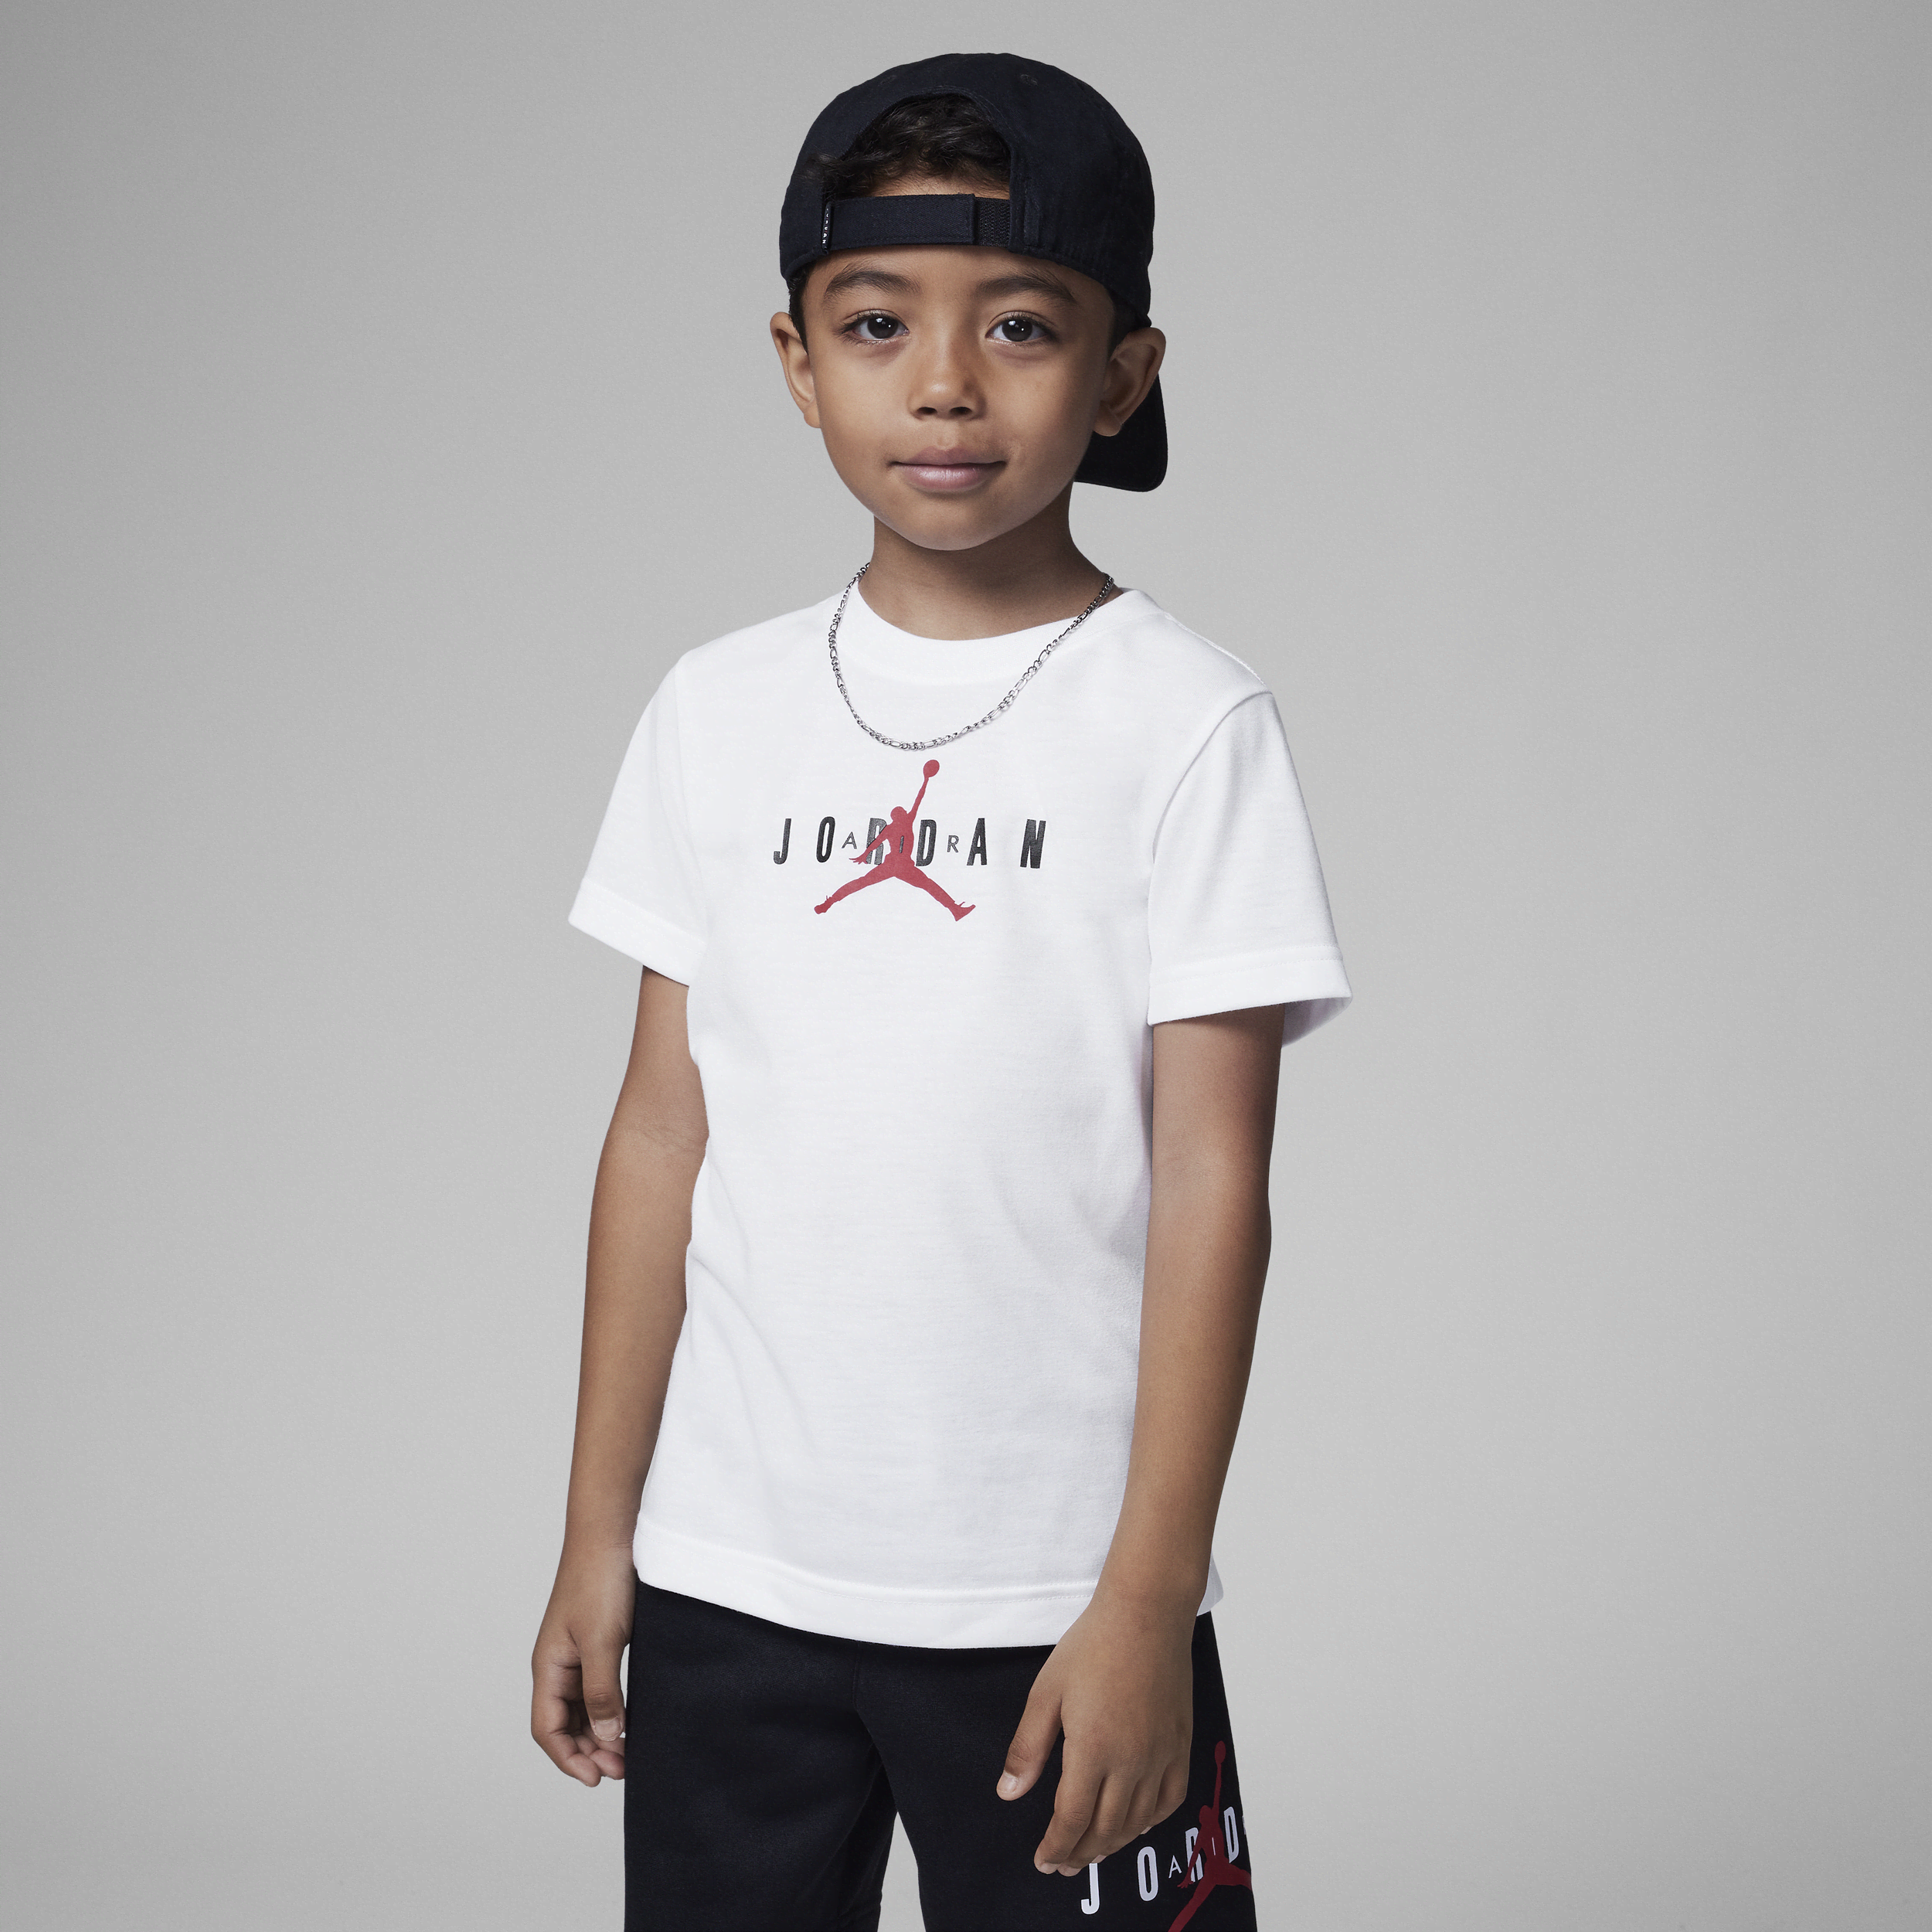 Przyjazny środowisku T-shirt dla małych dzieci Jordan - Biel